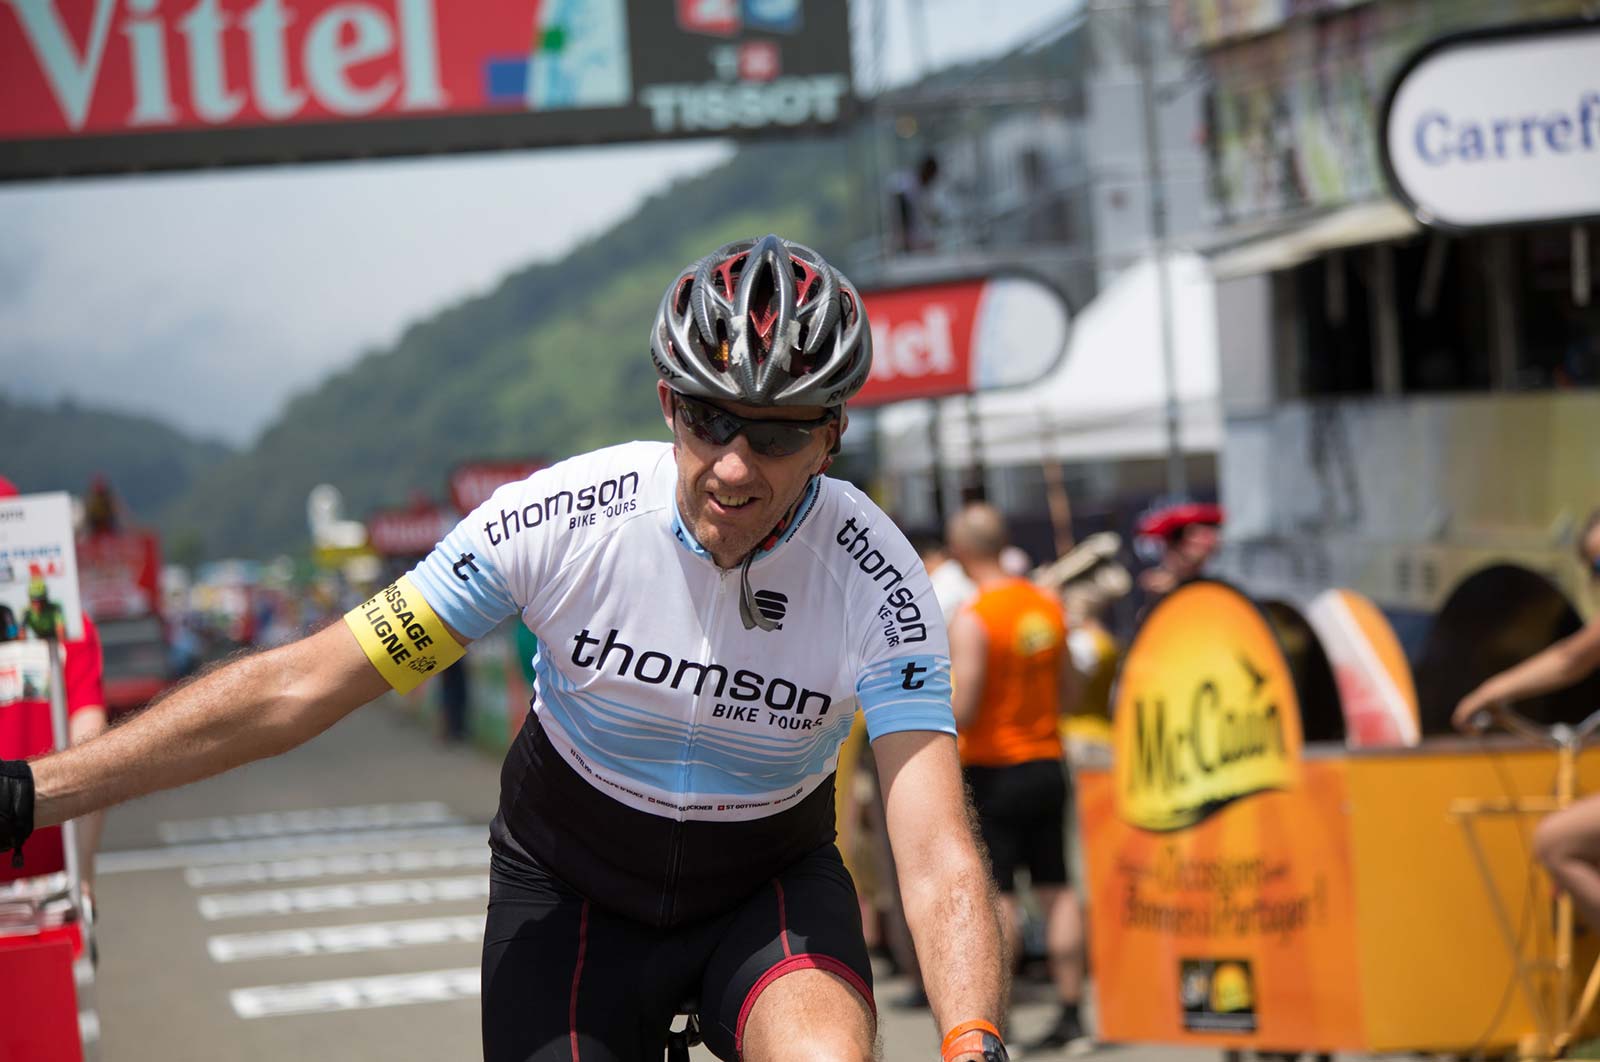 2019 Tour de France - Pyrenees - Ride across the finish line